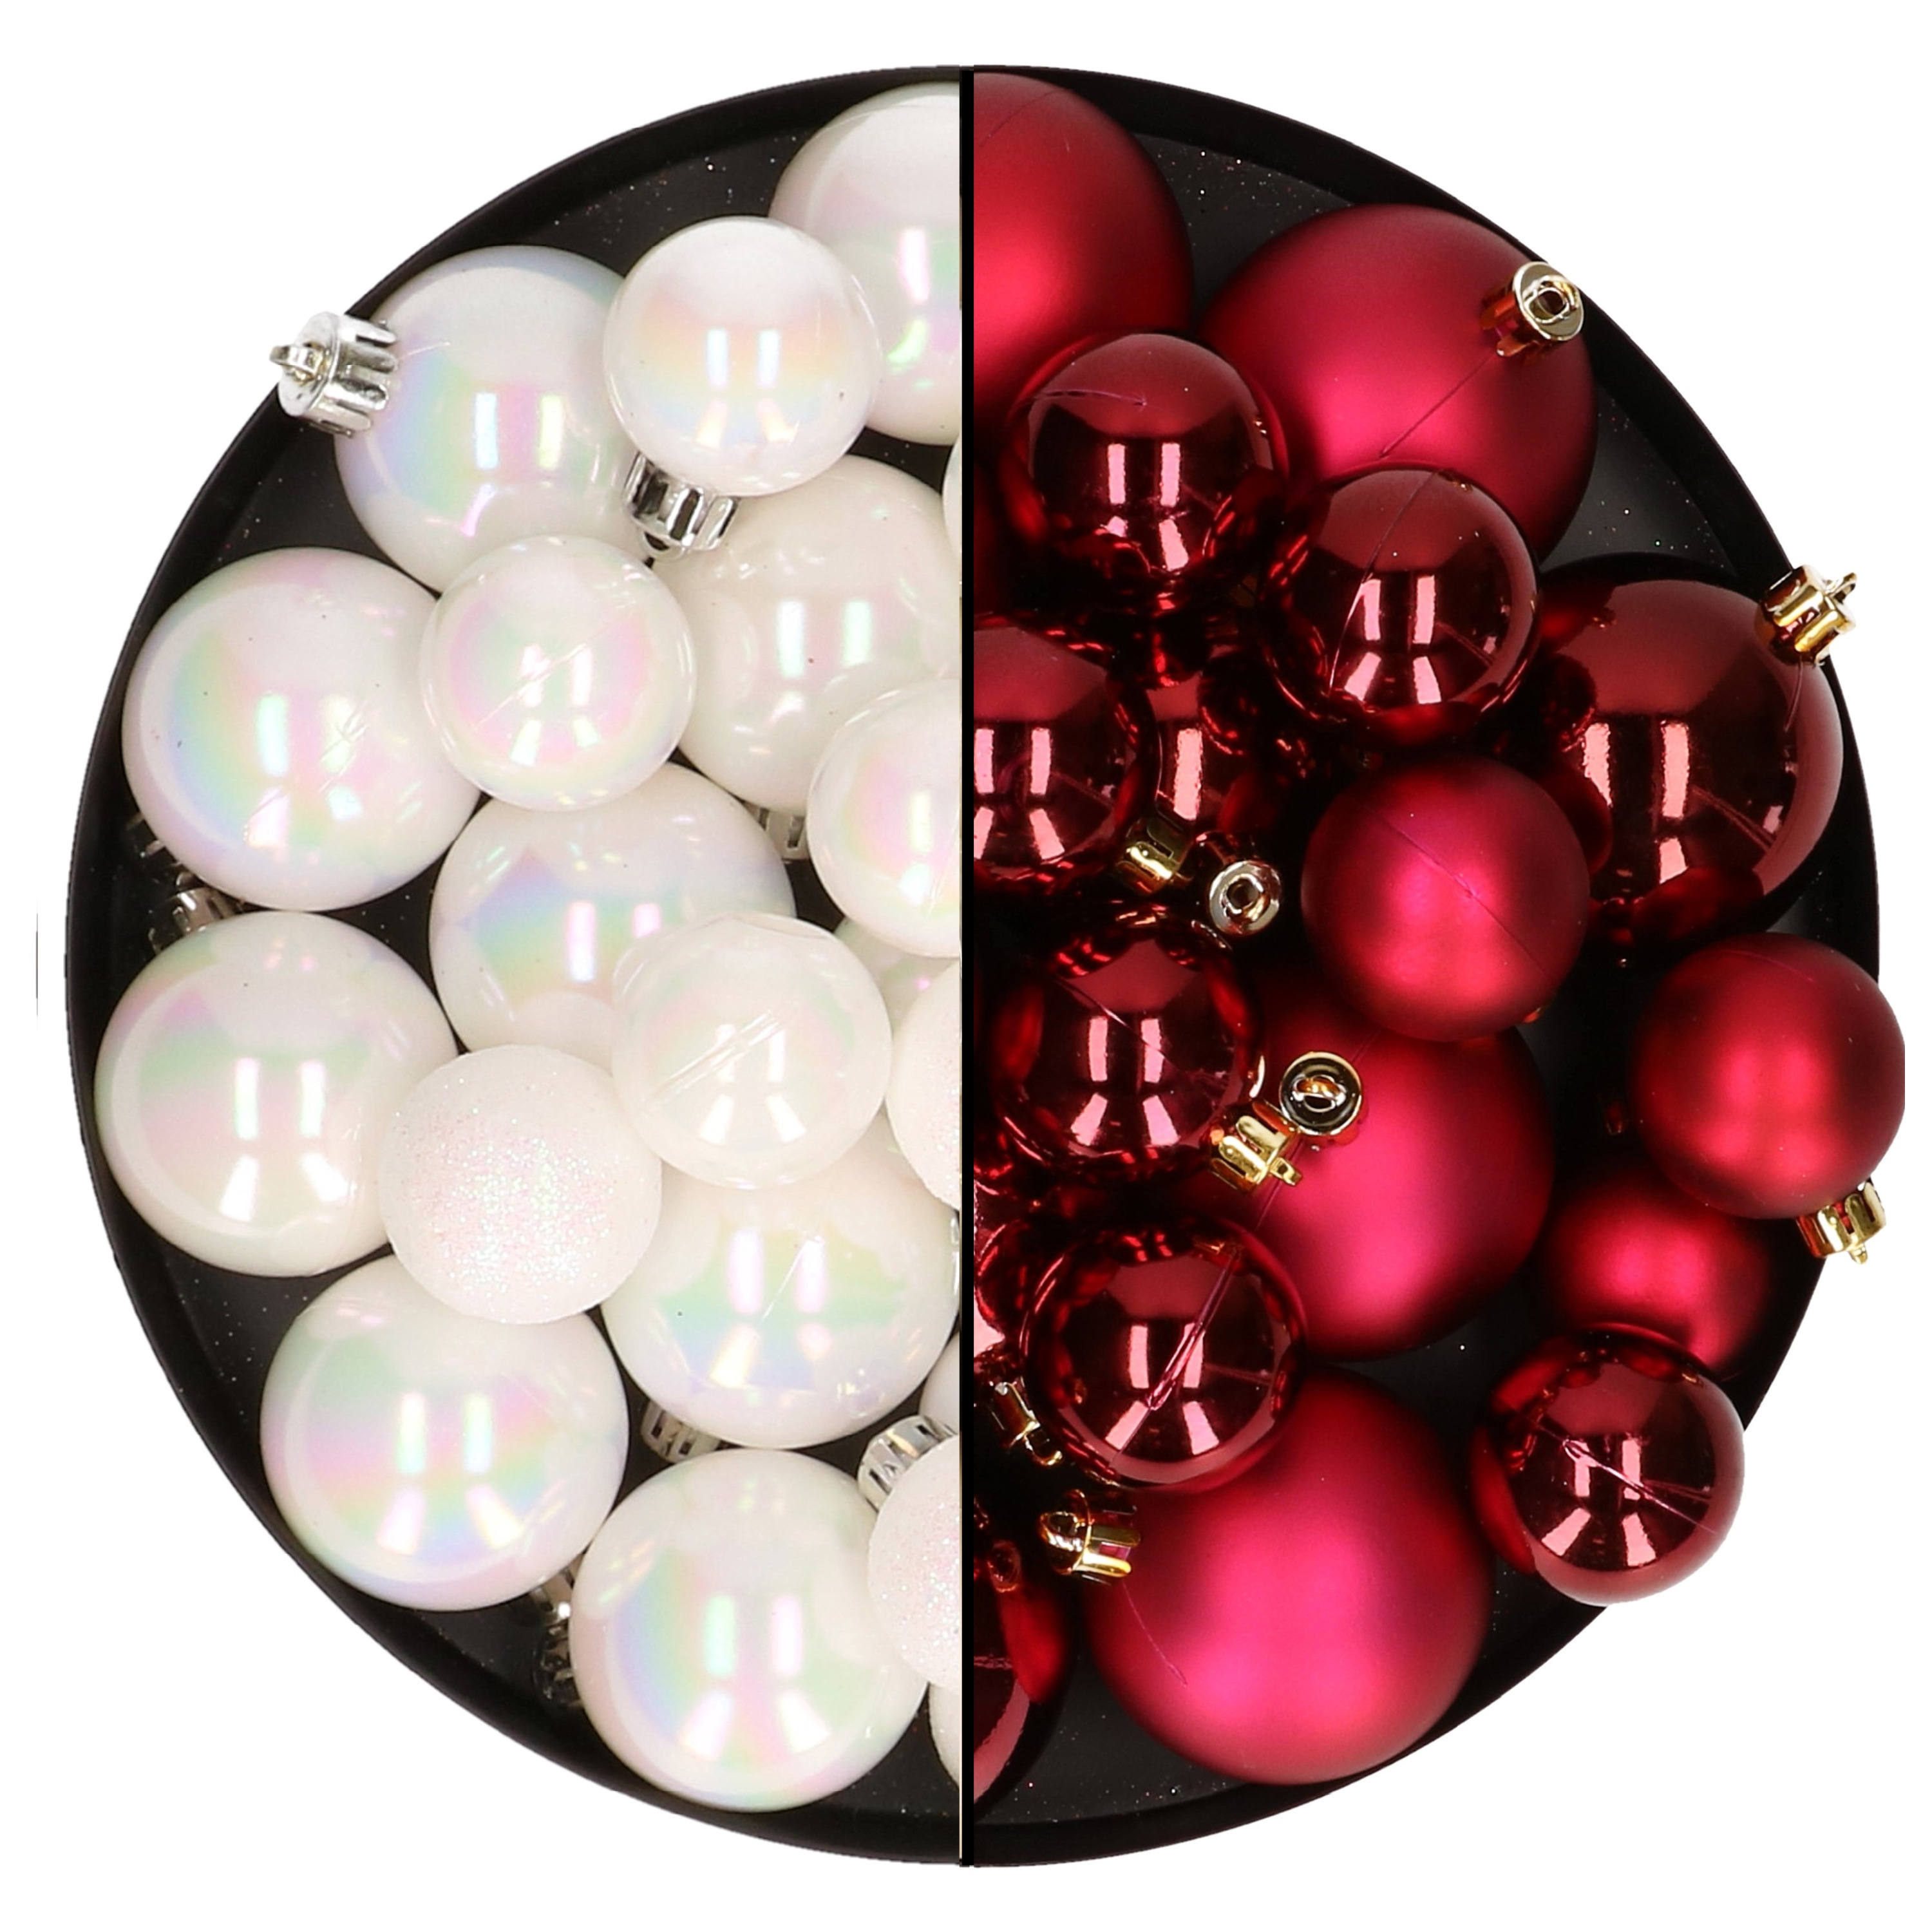 Kerstversiering kunststof kerstballen mix parelmoer wit-donkerrood 6-8-10 cm pakket van 44x stuks